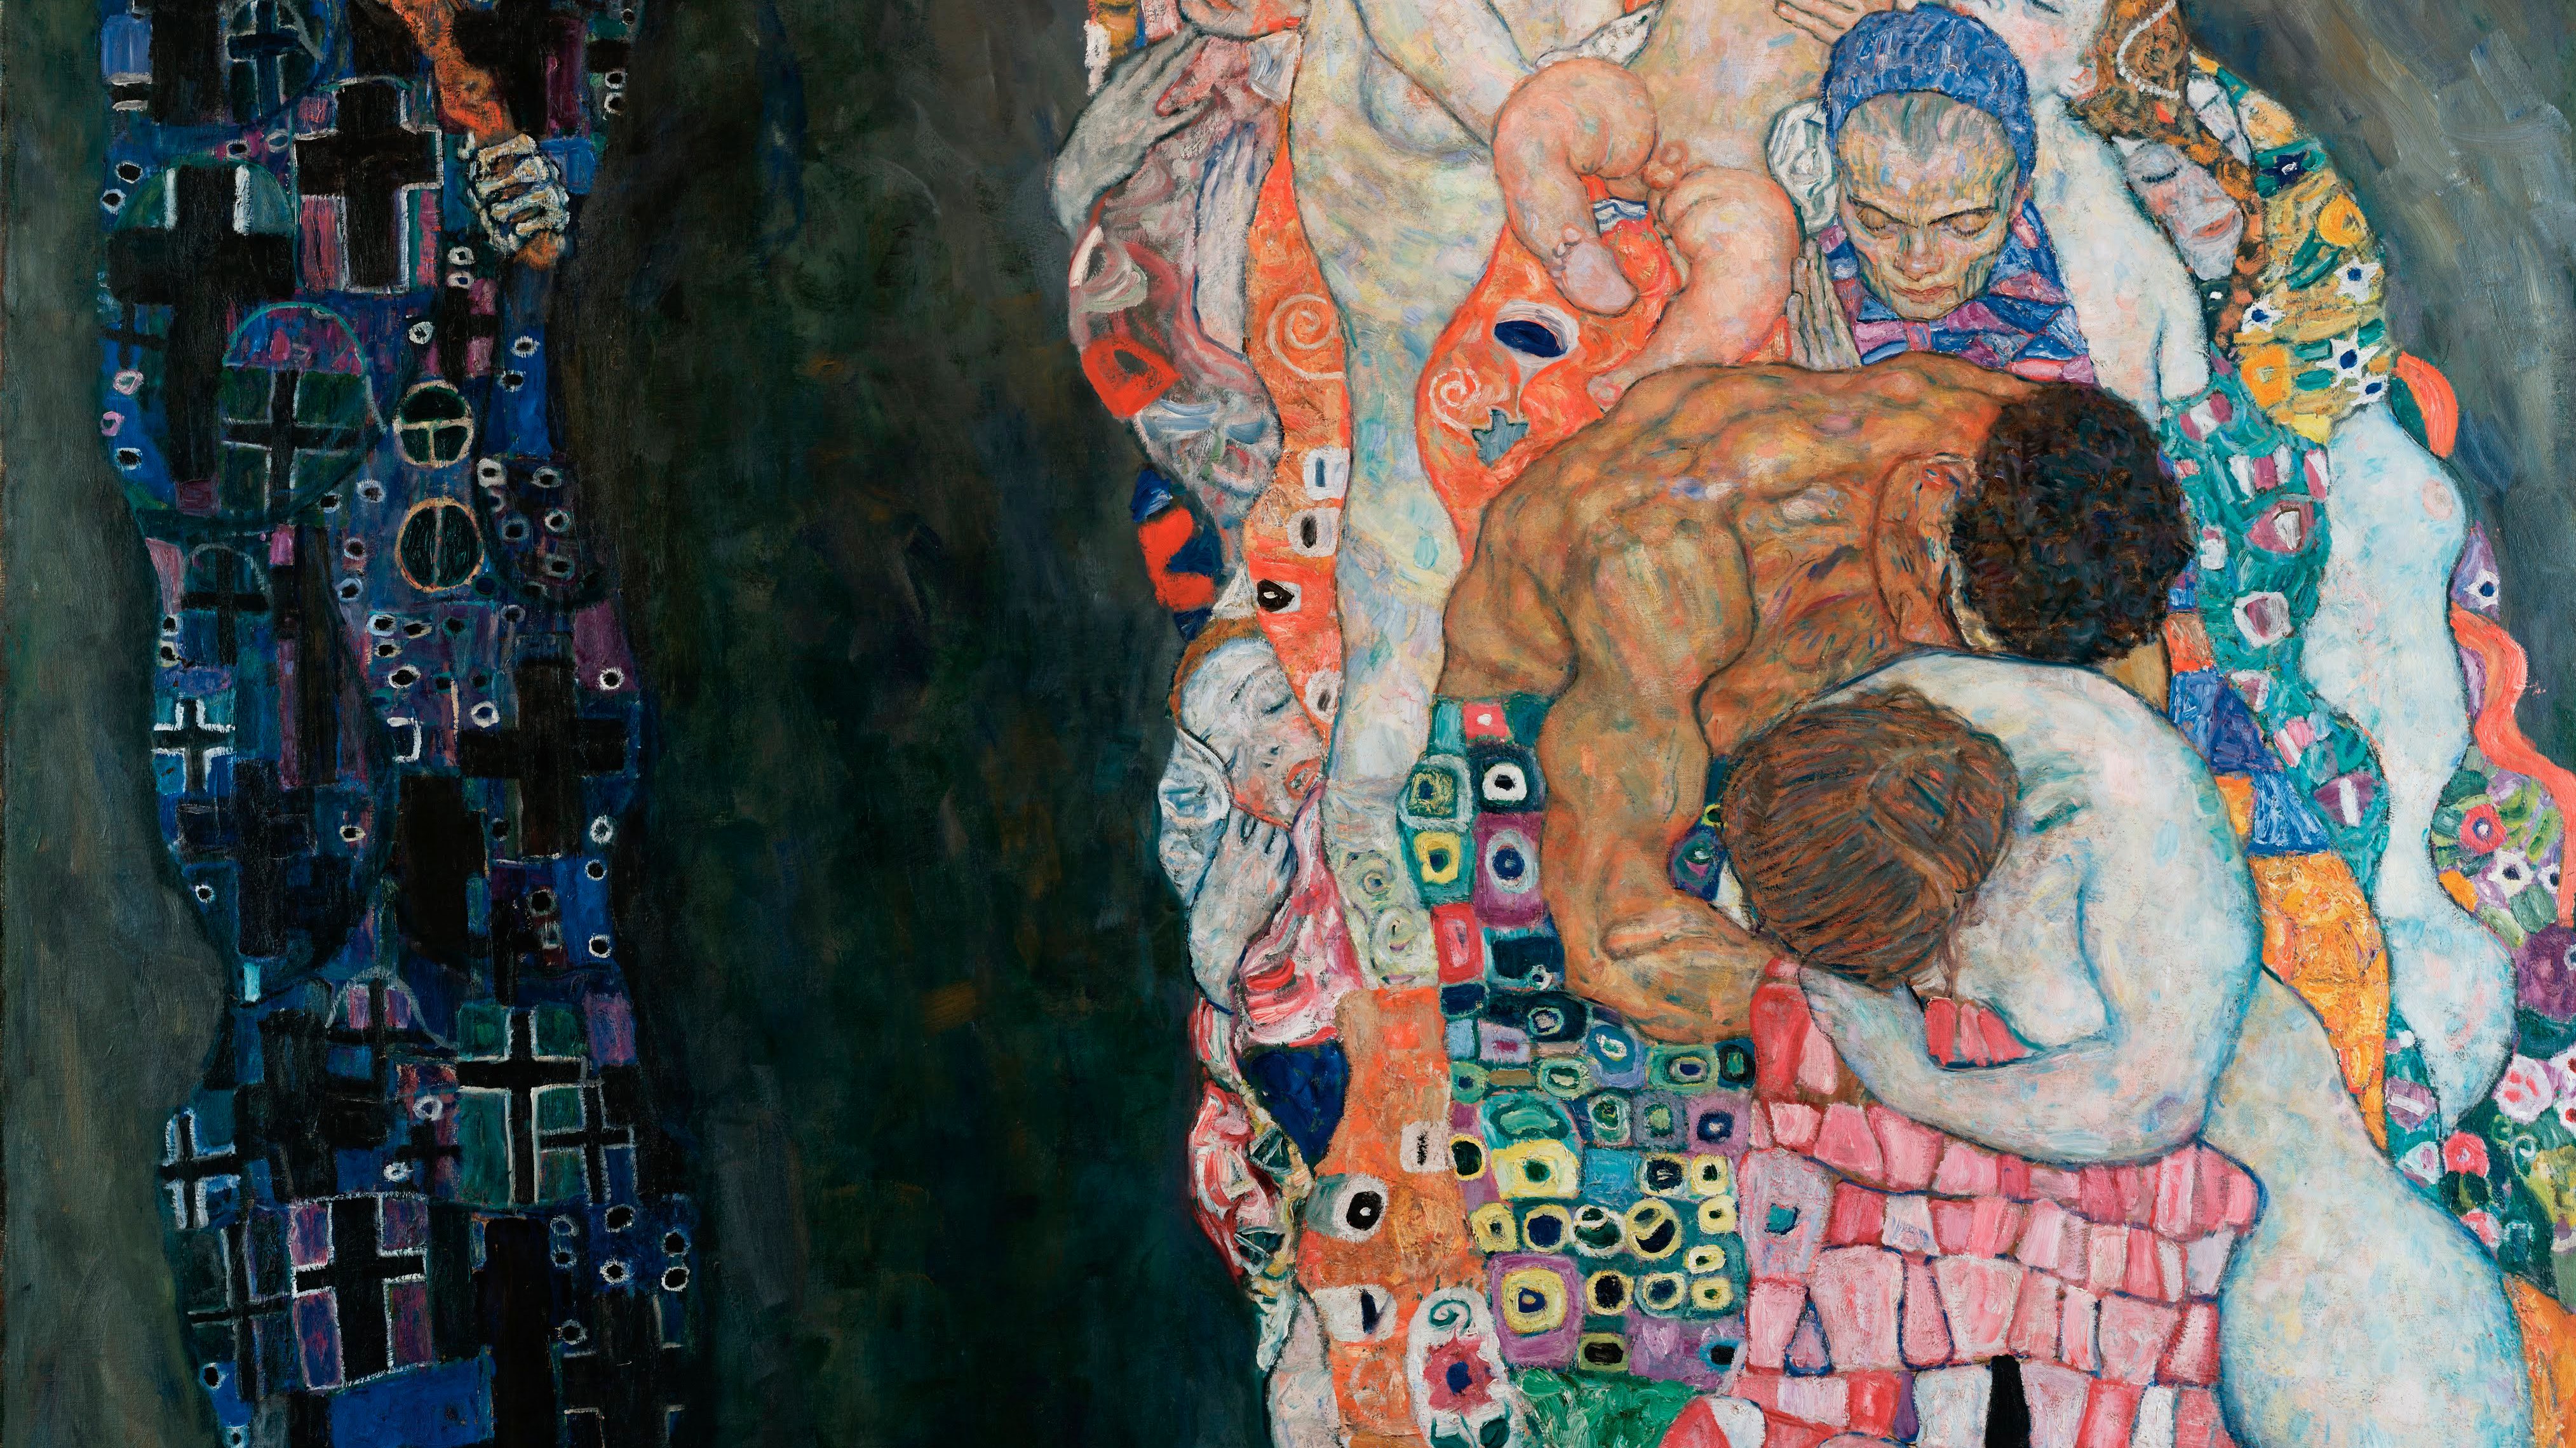 Death and Life (Tod und Leben) by Gustav Klimt